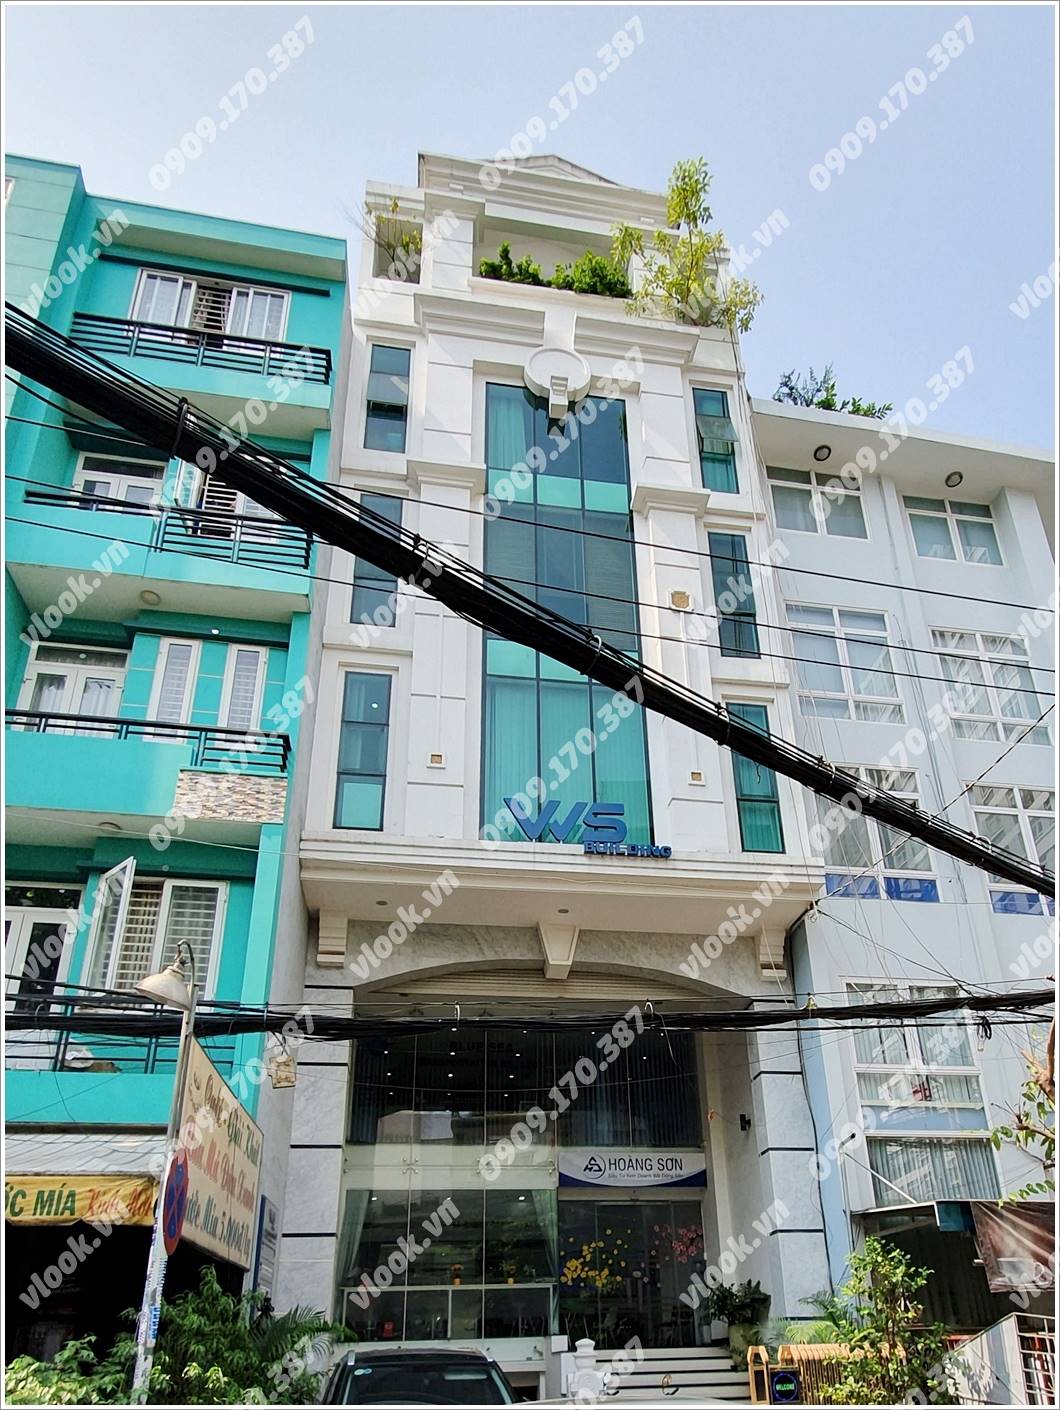 Mặt trước cao ốc cho thuê văn phòng OSHO Building, Lê Trung Nghĩa, Quận Tân Bình, TPHCM - vlook.vn